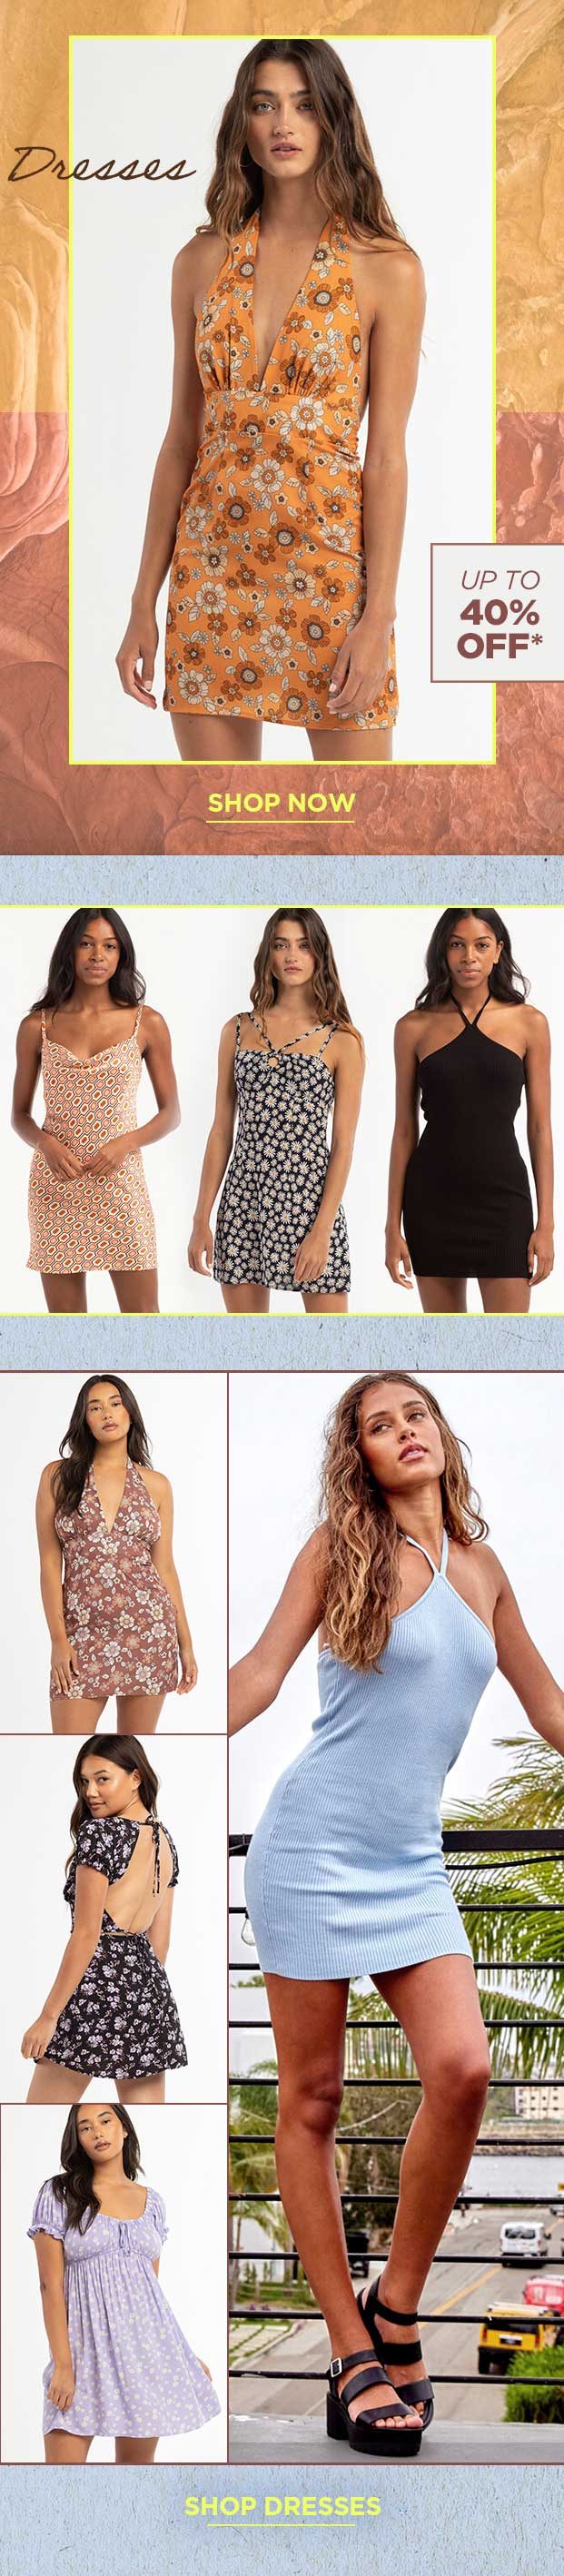 Shop Women's Dresses